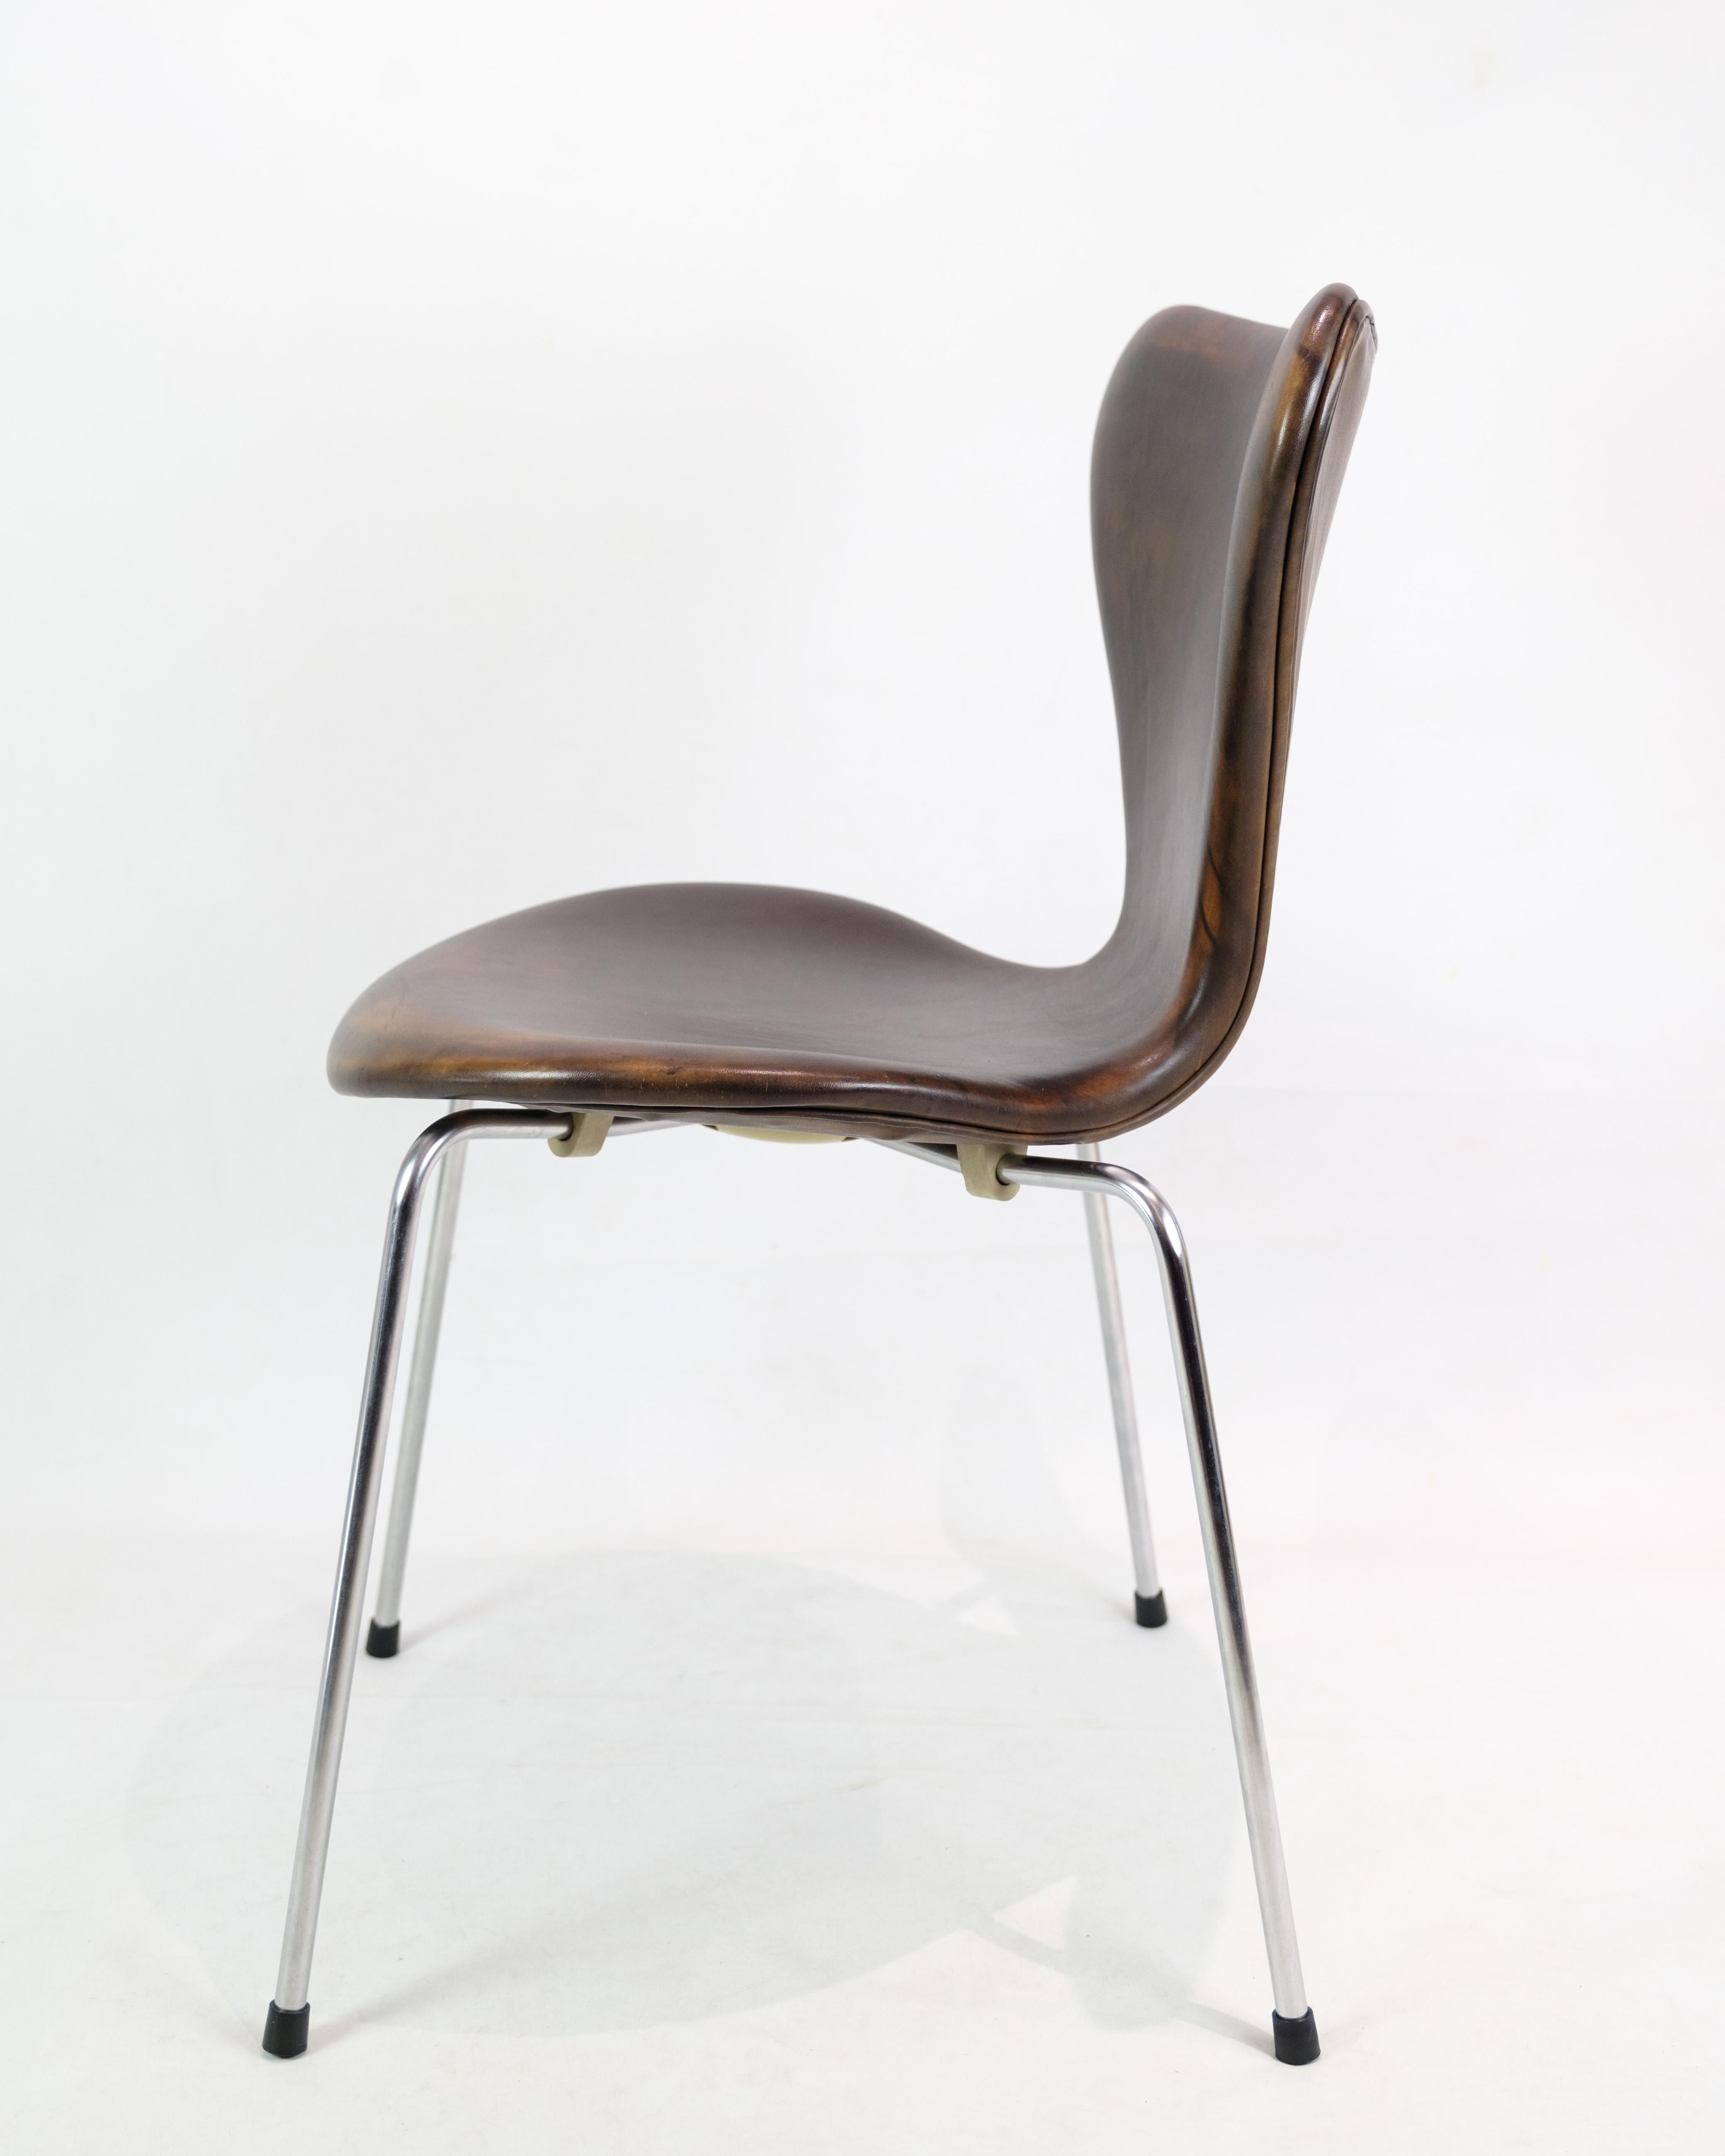 Exquisiter Satz von 6 Stühlen des Modells 3107 von Arne Jacobsen, hergestellt von Fritz Hansen: Ein Zeugnis für zeitloses Design und dauerhafte Eleganz. Diese ikonischen Stühle, die von Arne Jacobsen entworfen und von Fritz Hansen mit großer